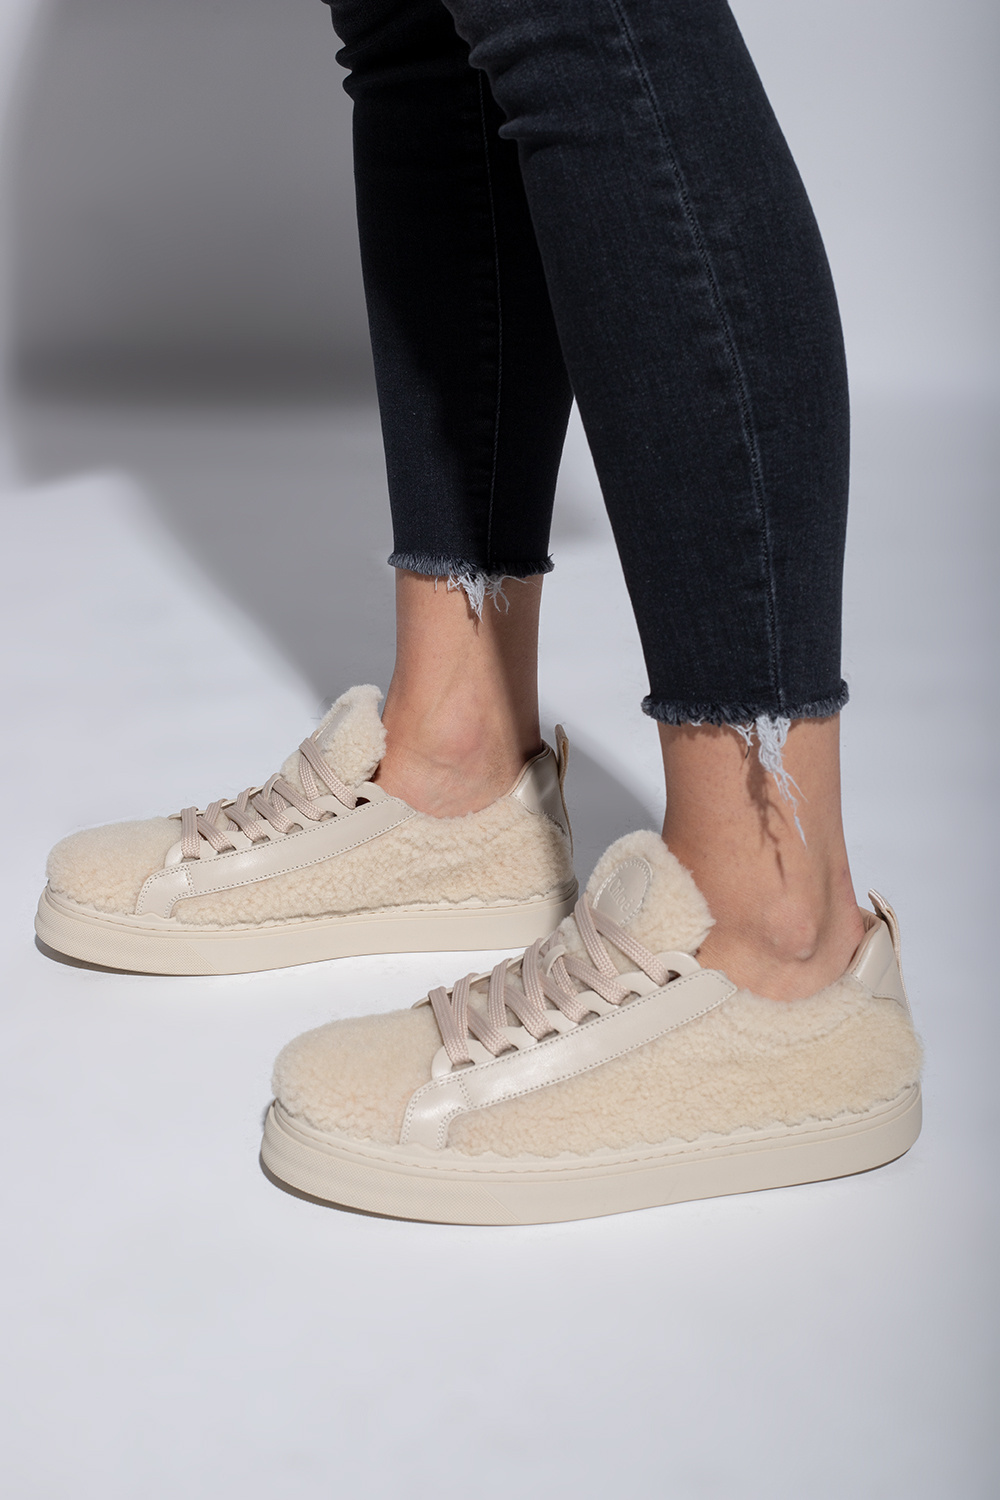 Chloé ‘Laurent’ fur sneakers